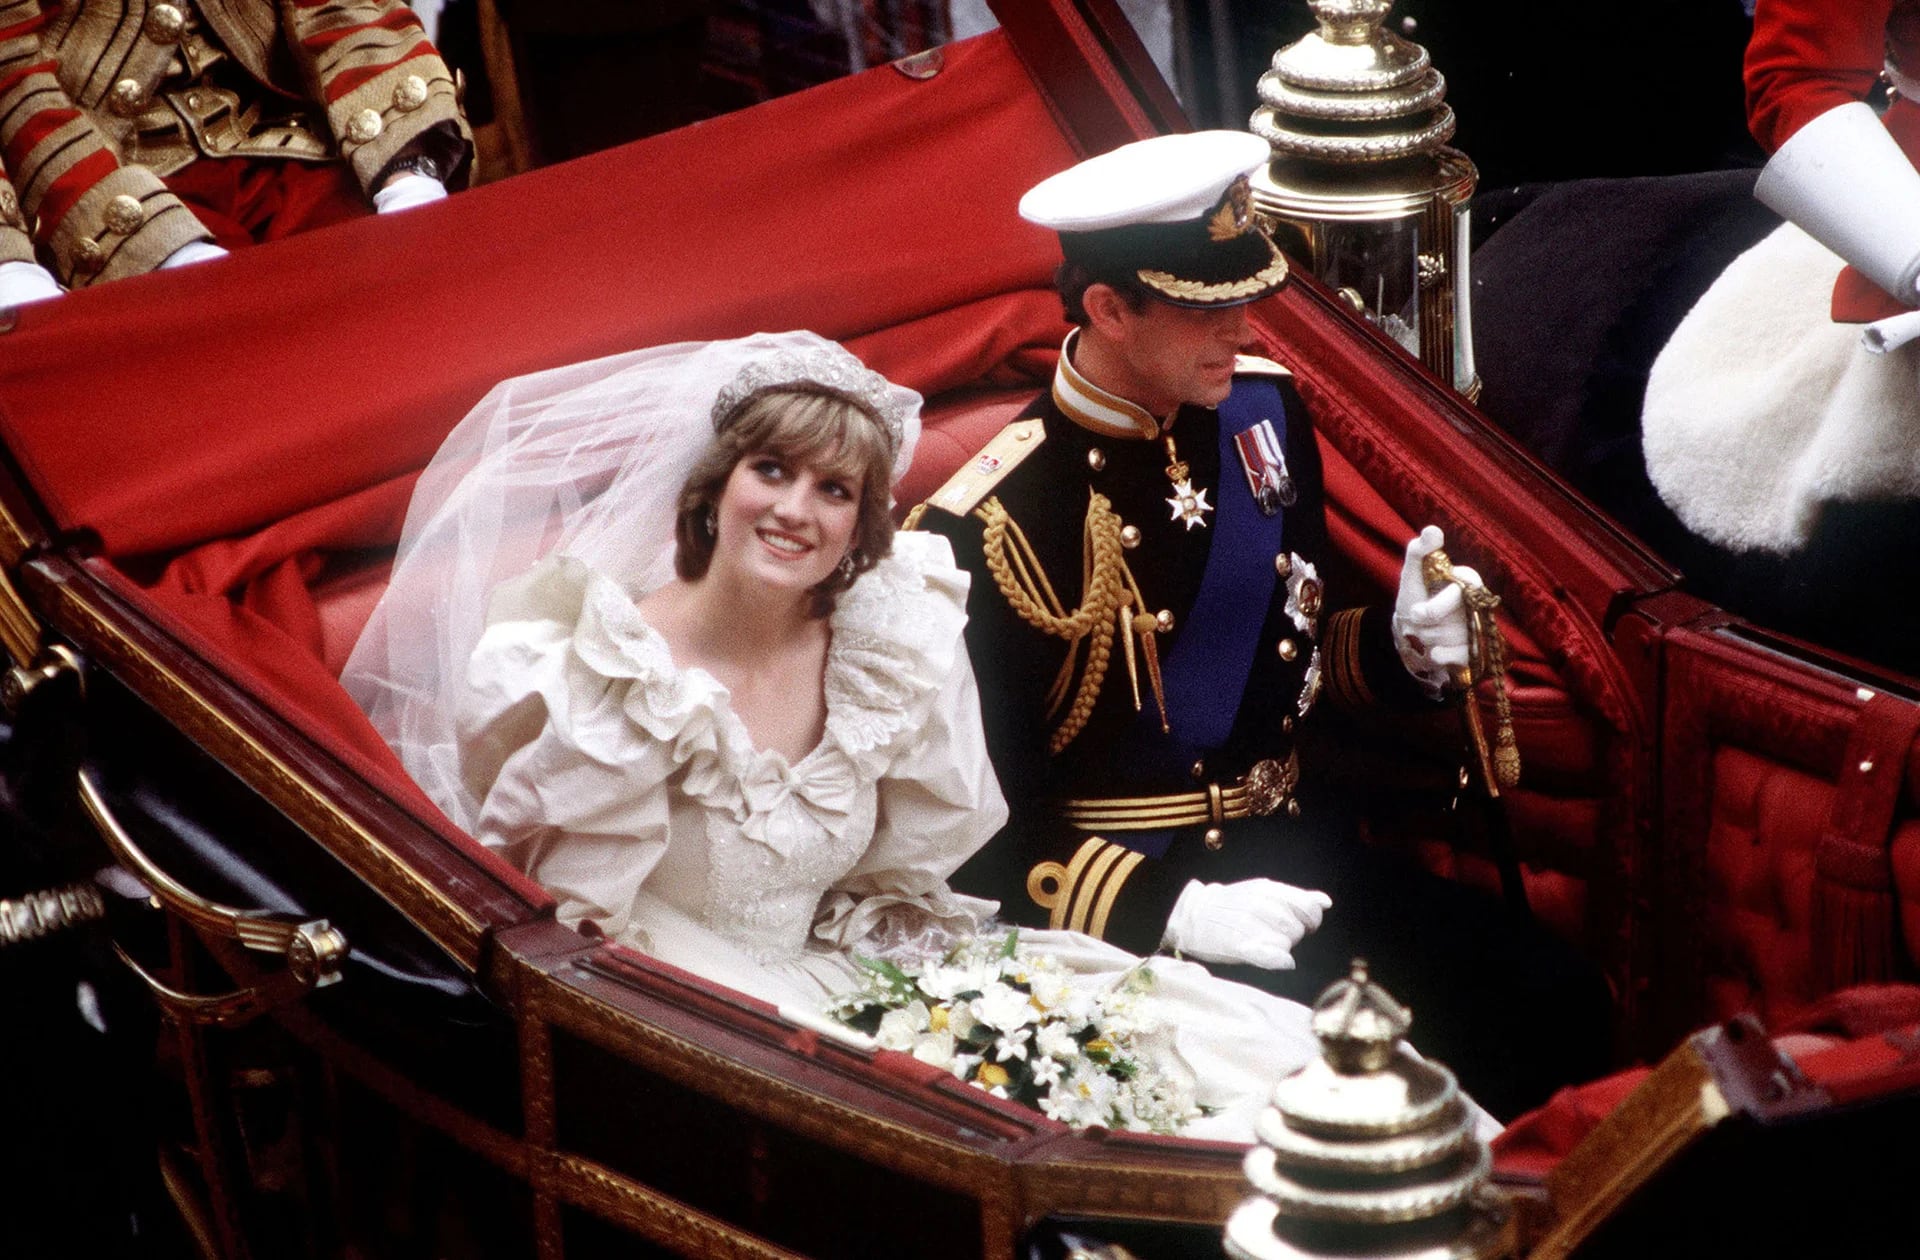 El príncipe y princesa de Gales viajan juntos en carruaje tras su boda el 29 de julio de 1981